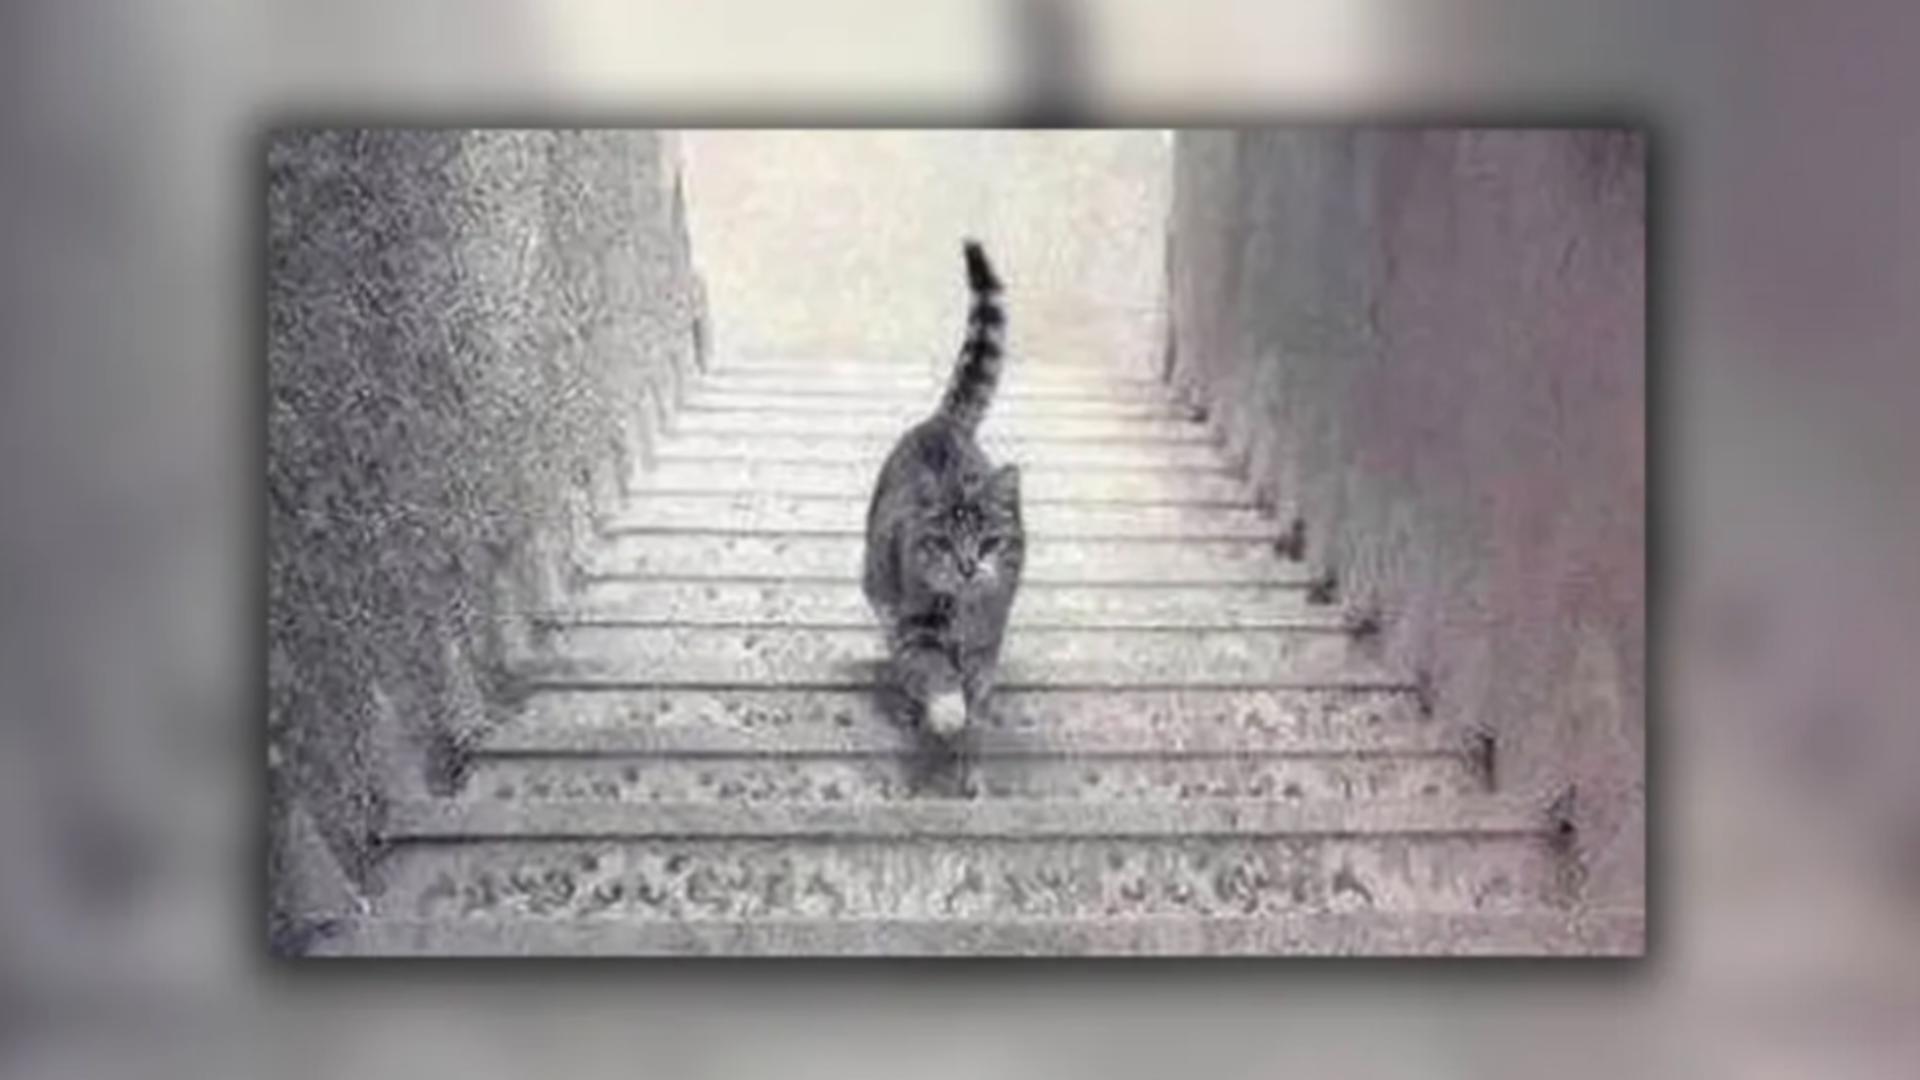 Cea mai enervantă iluzie optică. Ce face pisica din fotografie: urcă sau coboară scările?